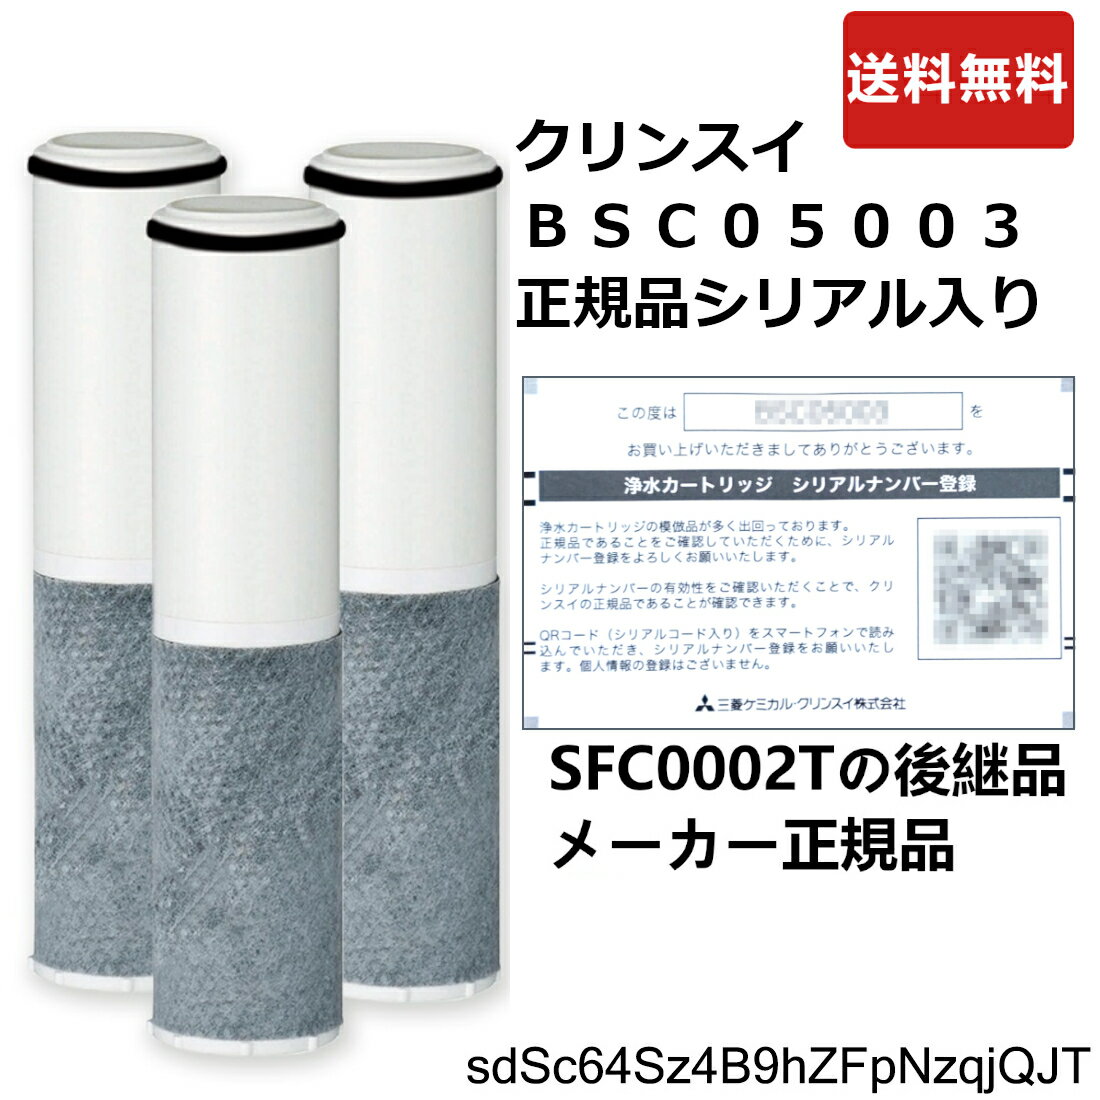 BSC05003：正規品確認シリアルカード入り 三菱ケミカルクリンスイ(SFC0002T後継品)《在庫あり 送料無料》F402他用カートリッジ(3本入)